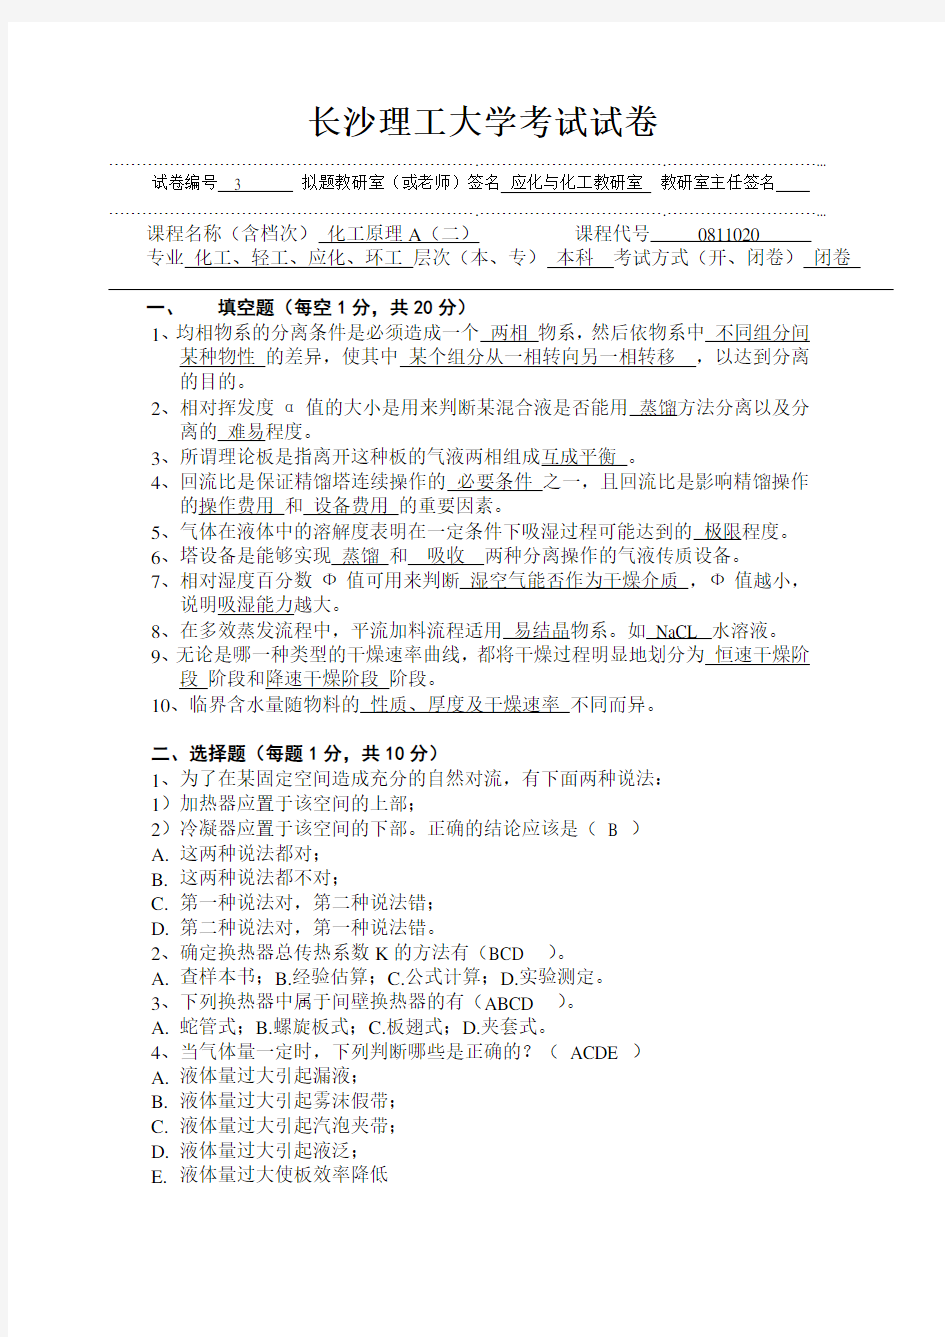 长沙理工大学考试试卷(下册3)